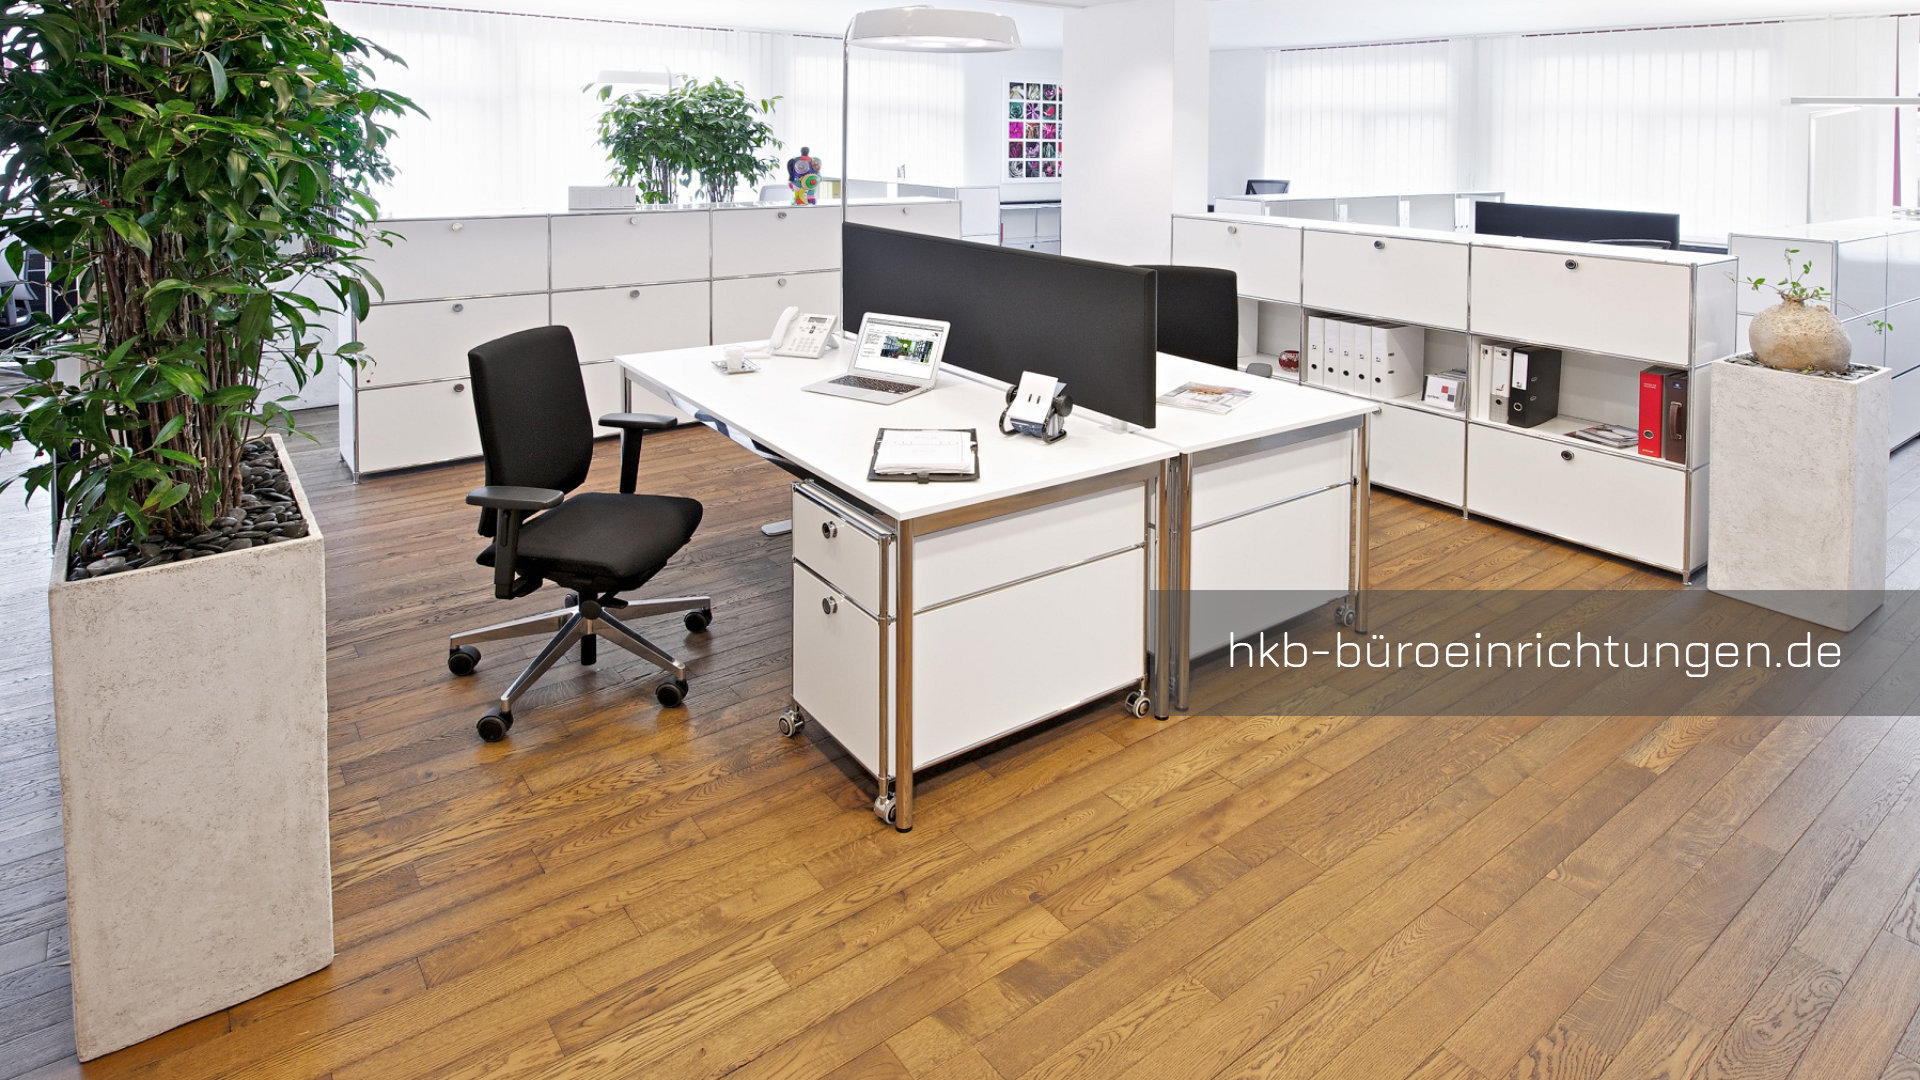 Büromöbel Doppelarbeitsplatz Schreibtisch 180 x 80 cm mit Tischplatte Melamin weiß und Metall Rollcontainer Hängeregistratur Metall Highboard mit Metall Ausziehtueren und Metall-Klapptueren in Farbkombination weiß